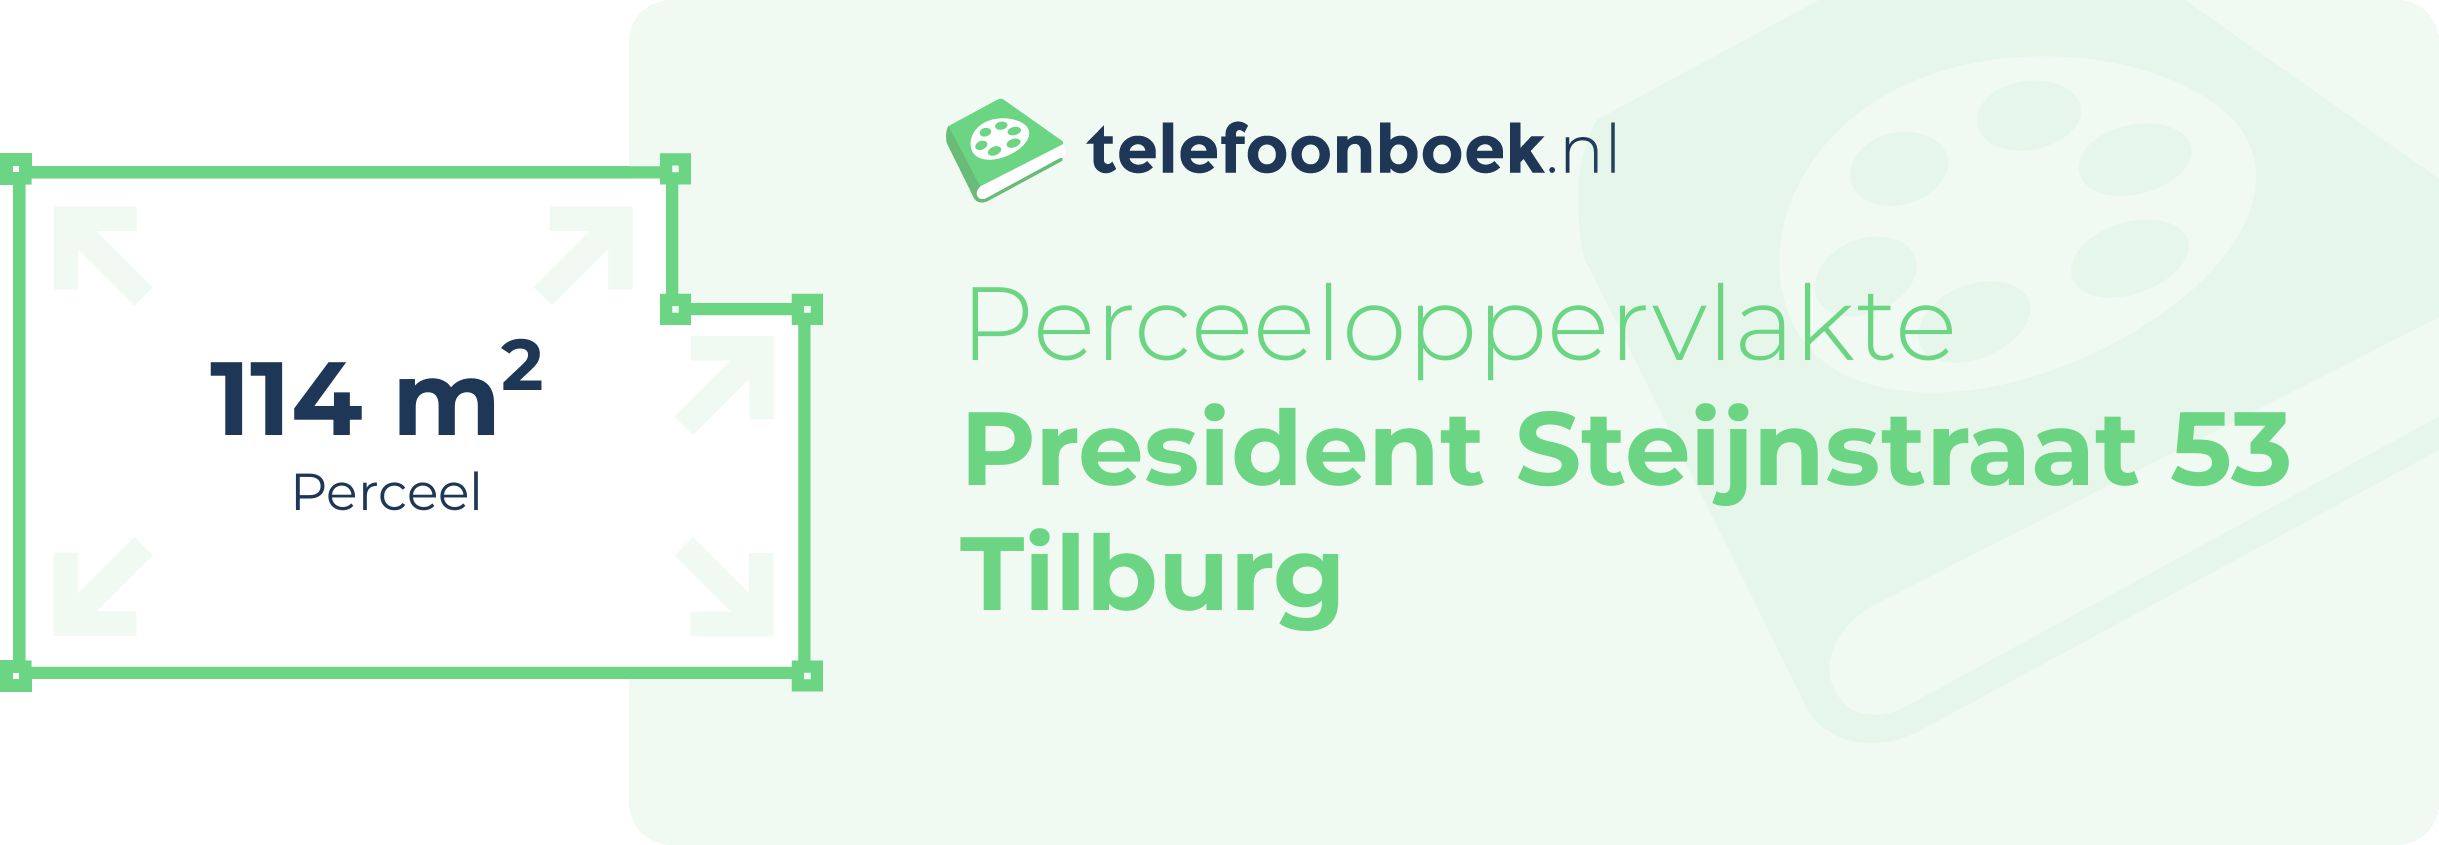 Perceeloppervlakte President Steijnstraat 53 Tilburg